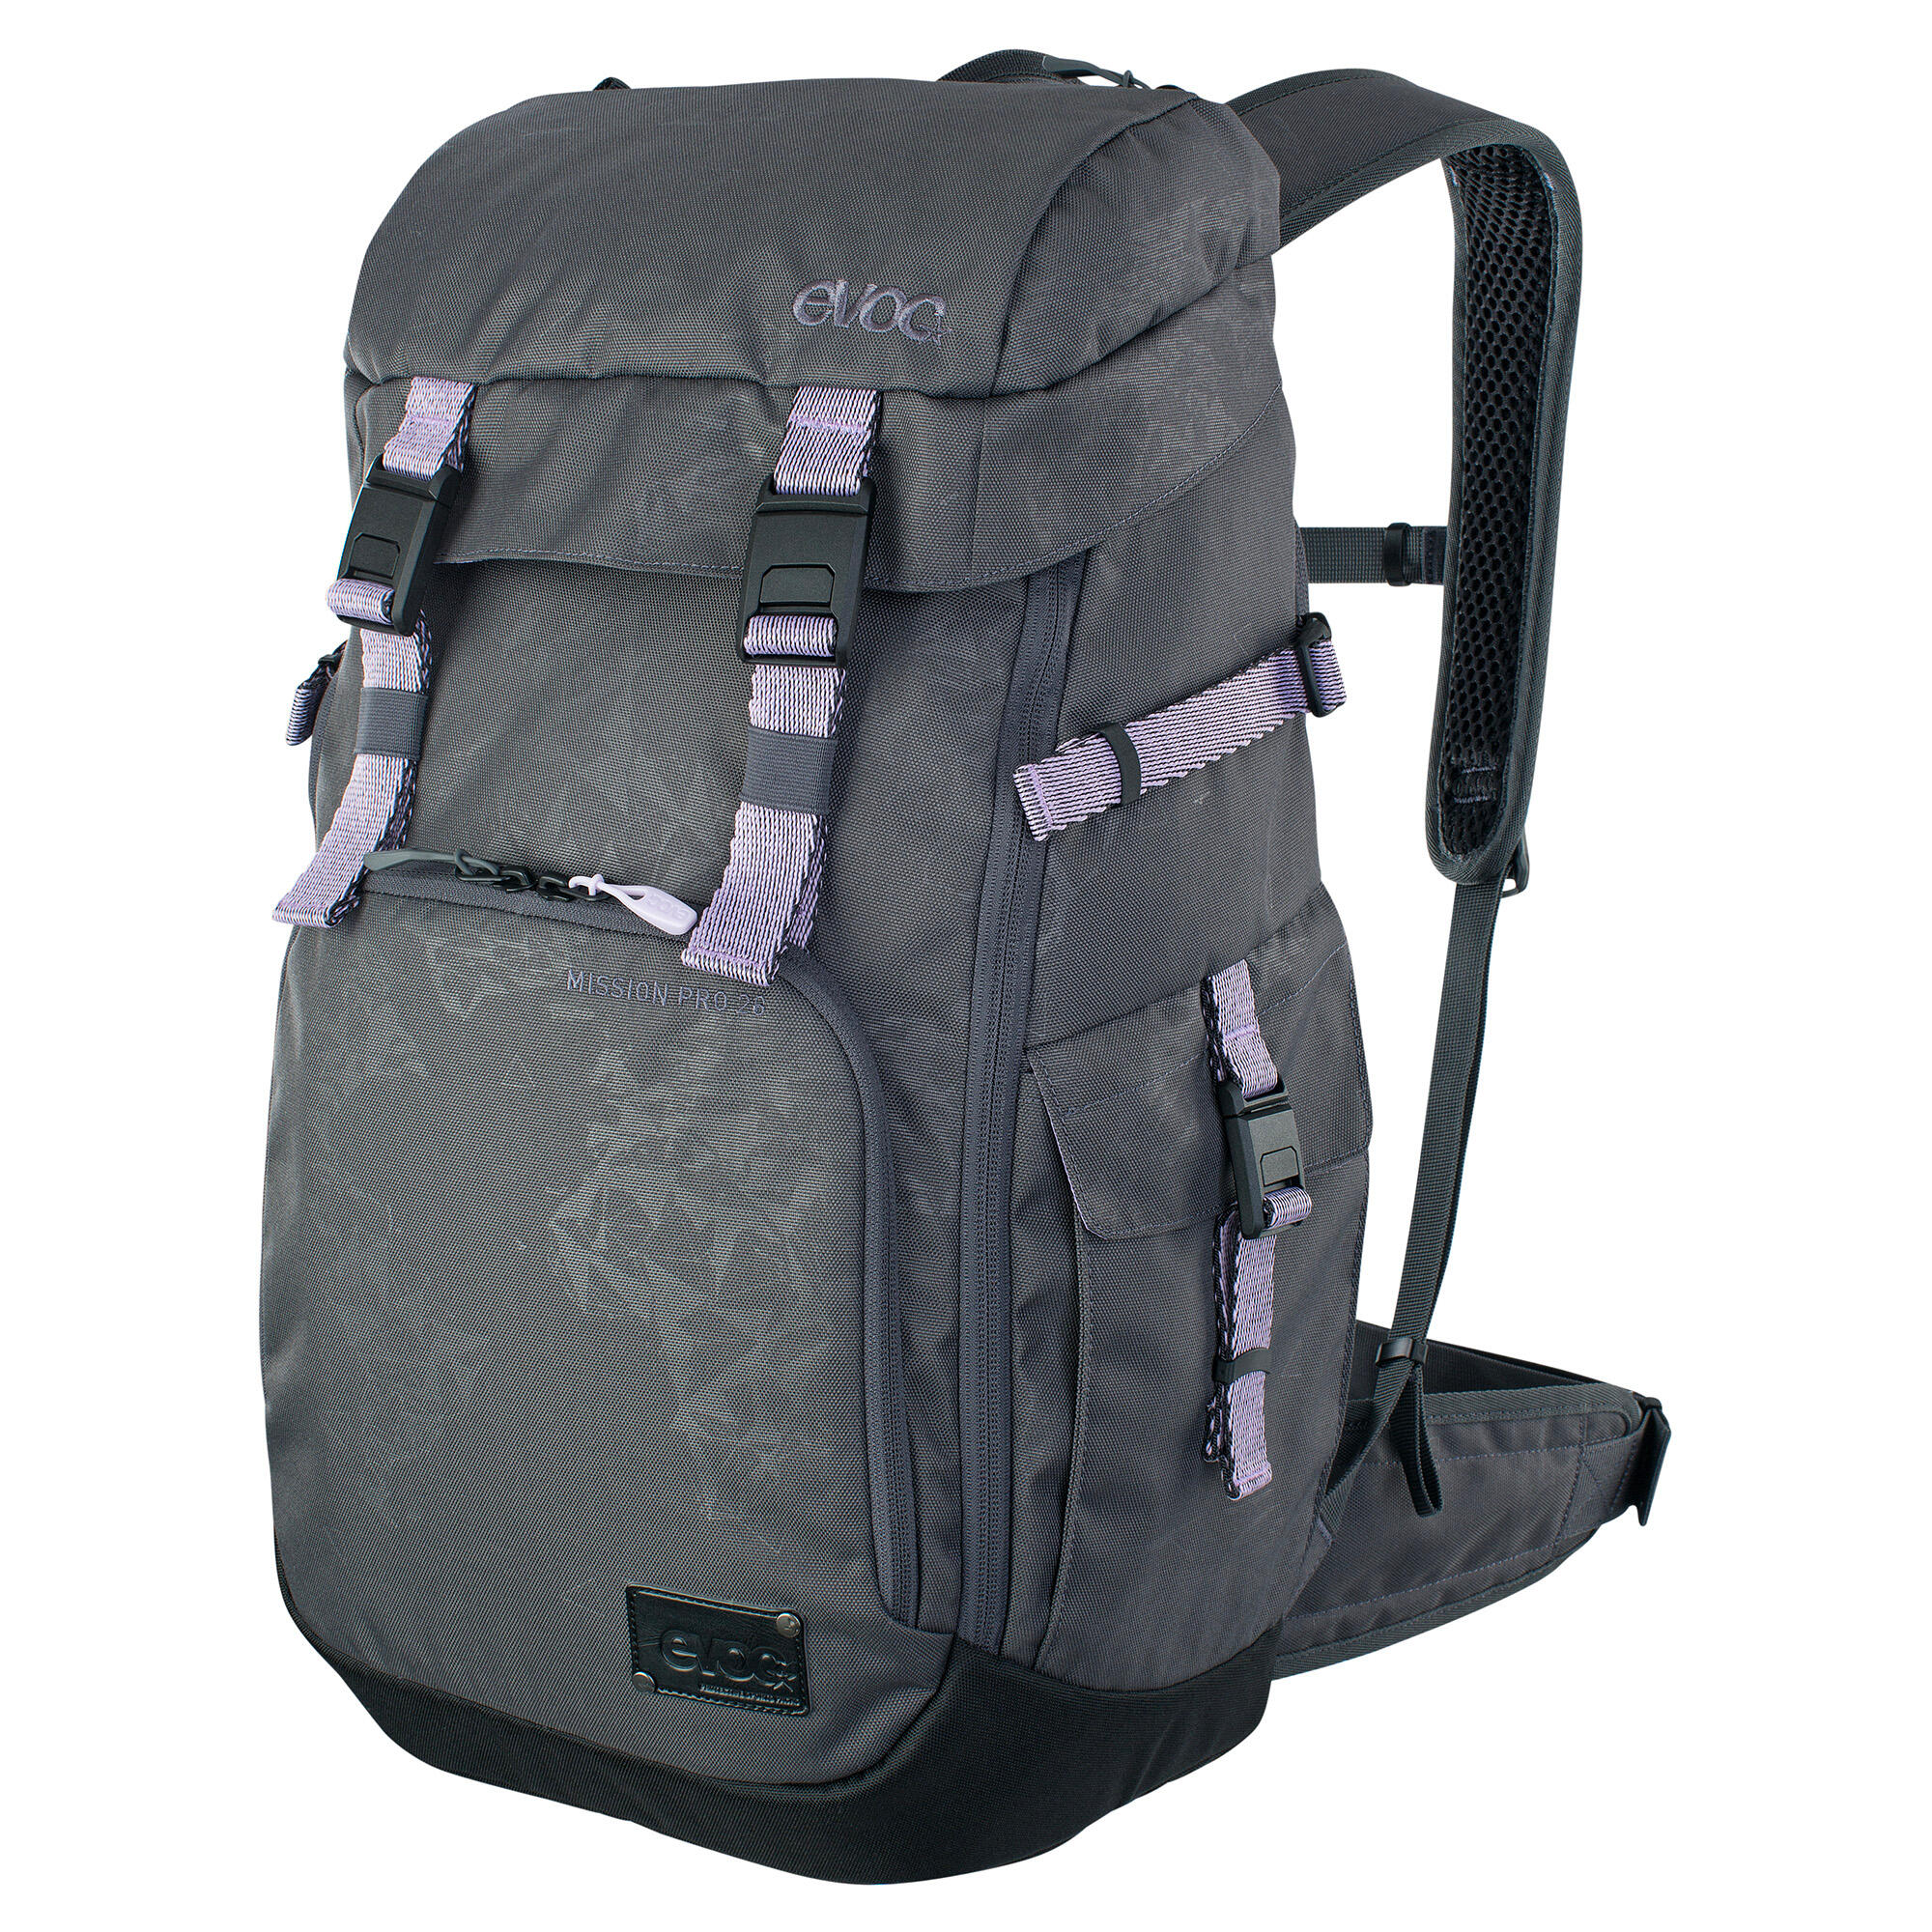 EVOC Mission Pro Backpack 6/7